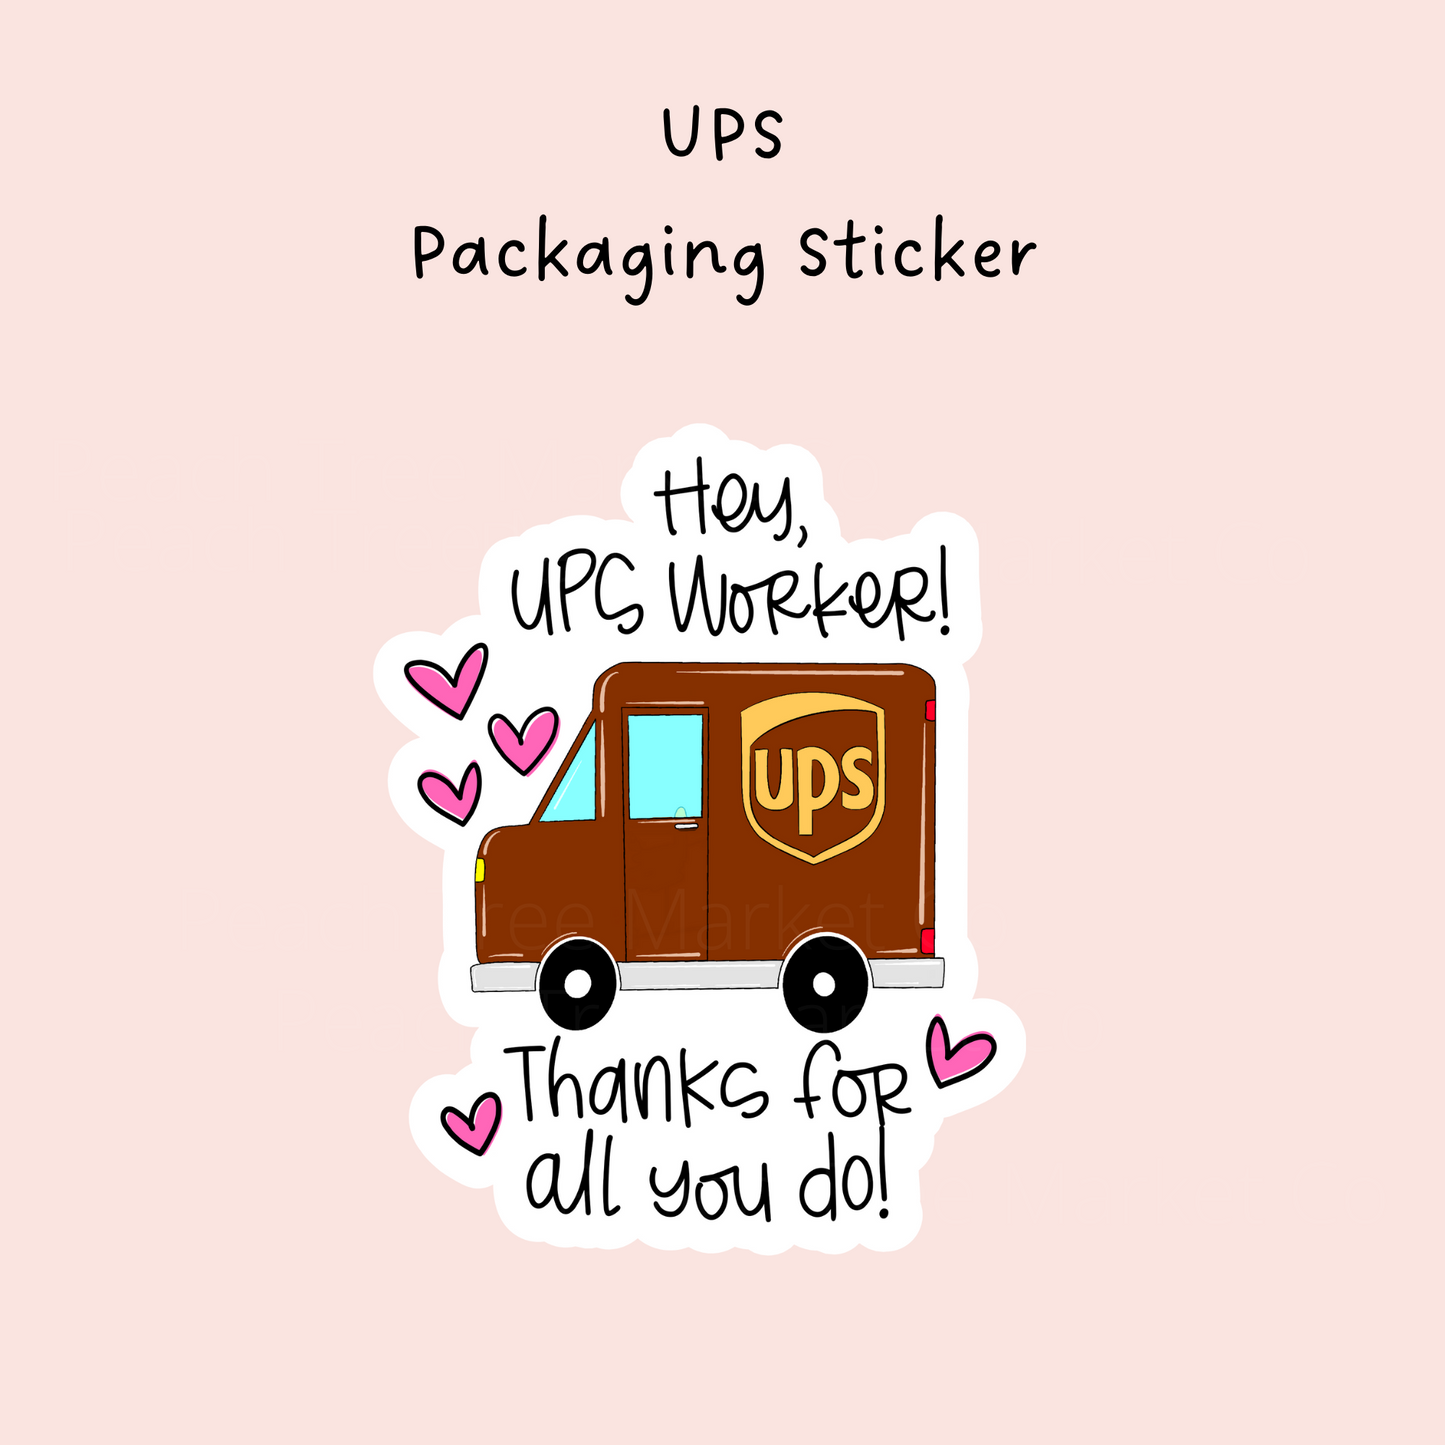 UPS Packaging Sticker